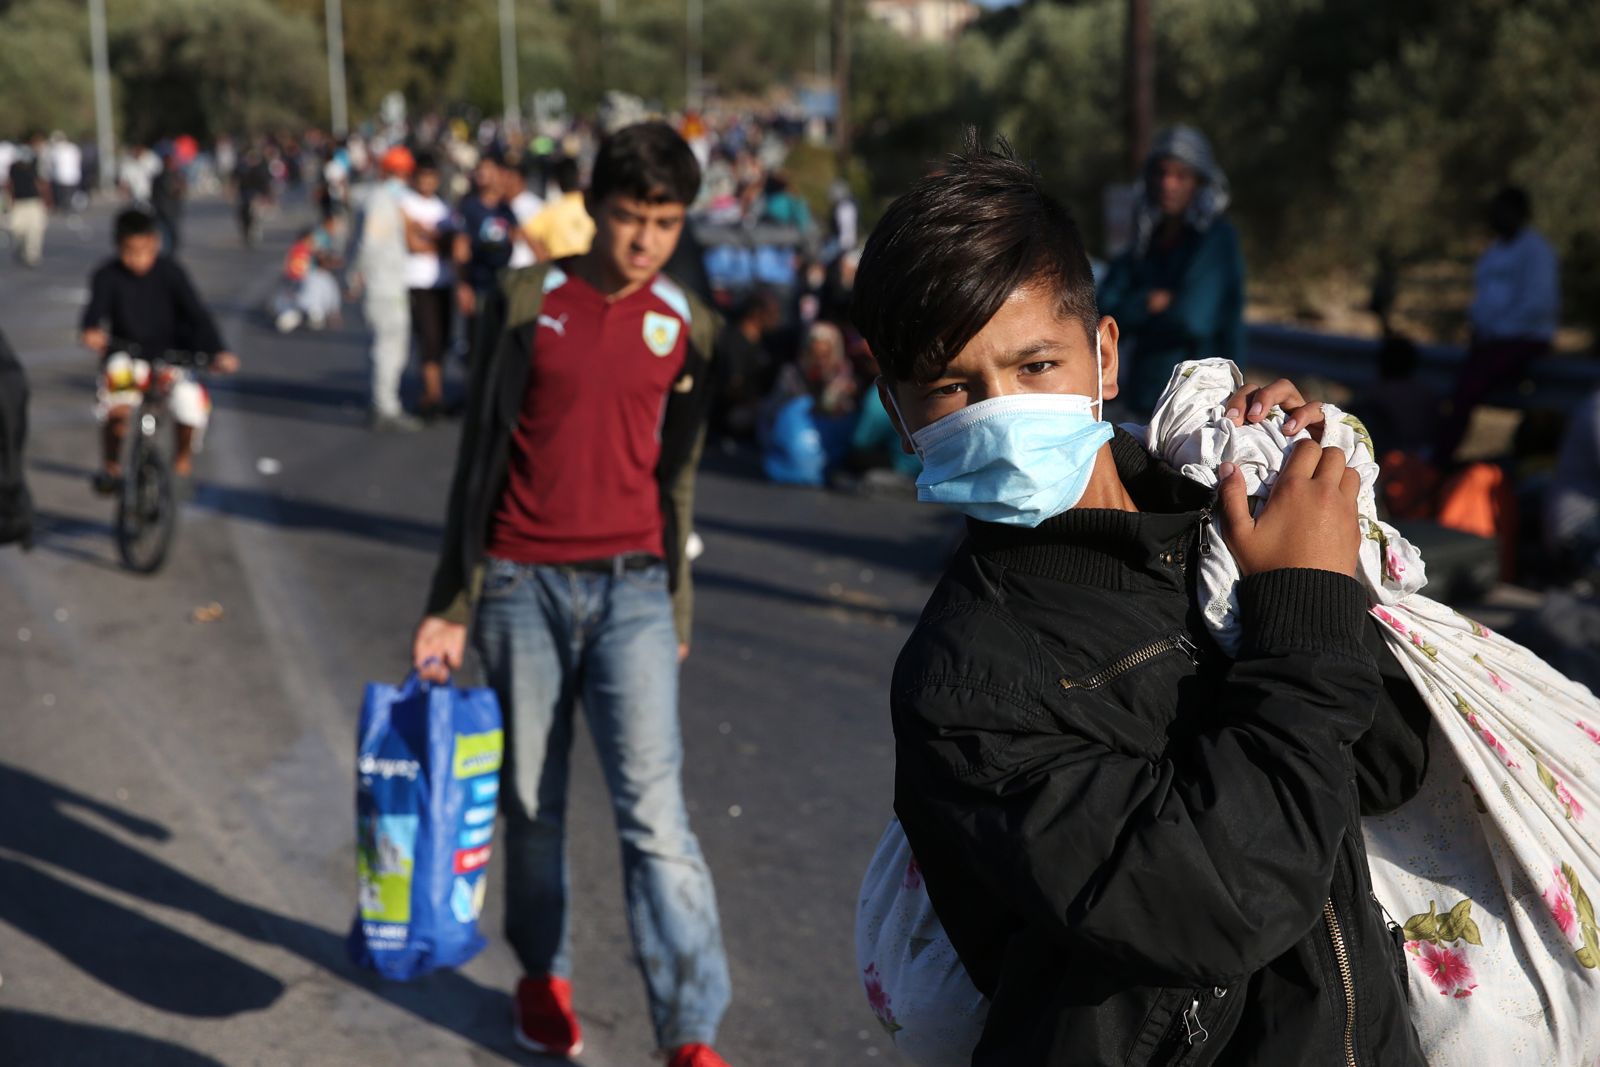 Menschenrechtsprinzipien und seelische Gesundheit von Migrant*innen: eine Fallstudie zur Situation in Griechenland